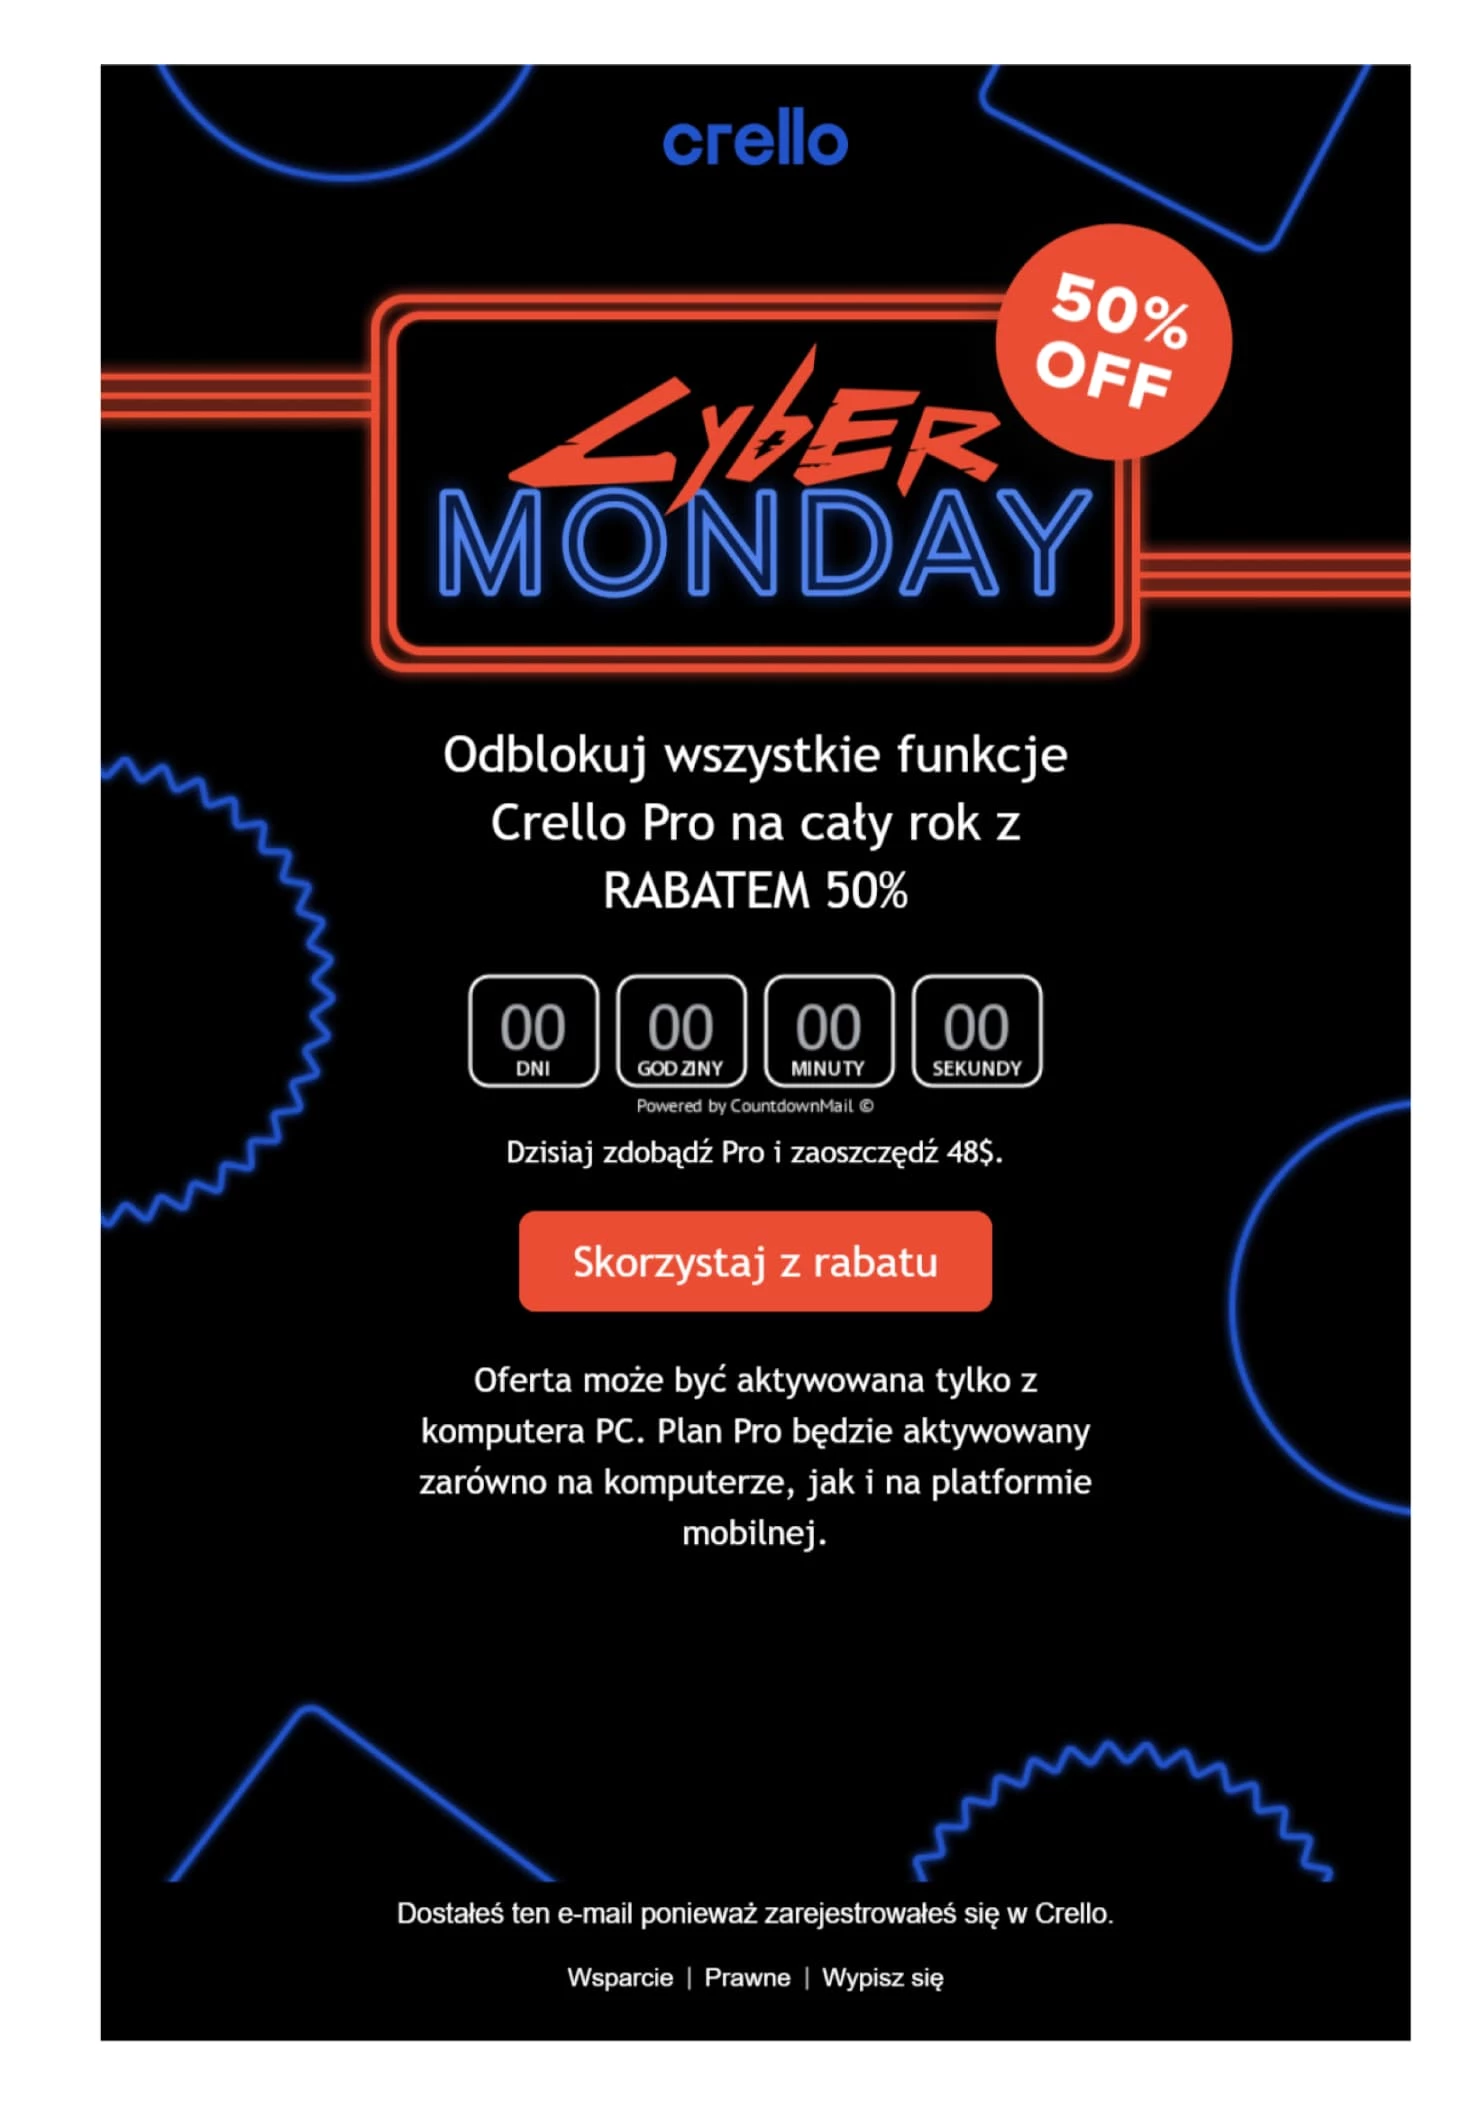 Crello Cyber Monday e-mail